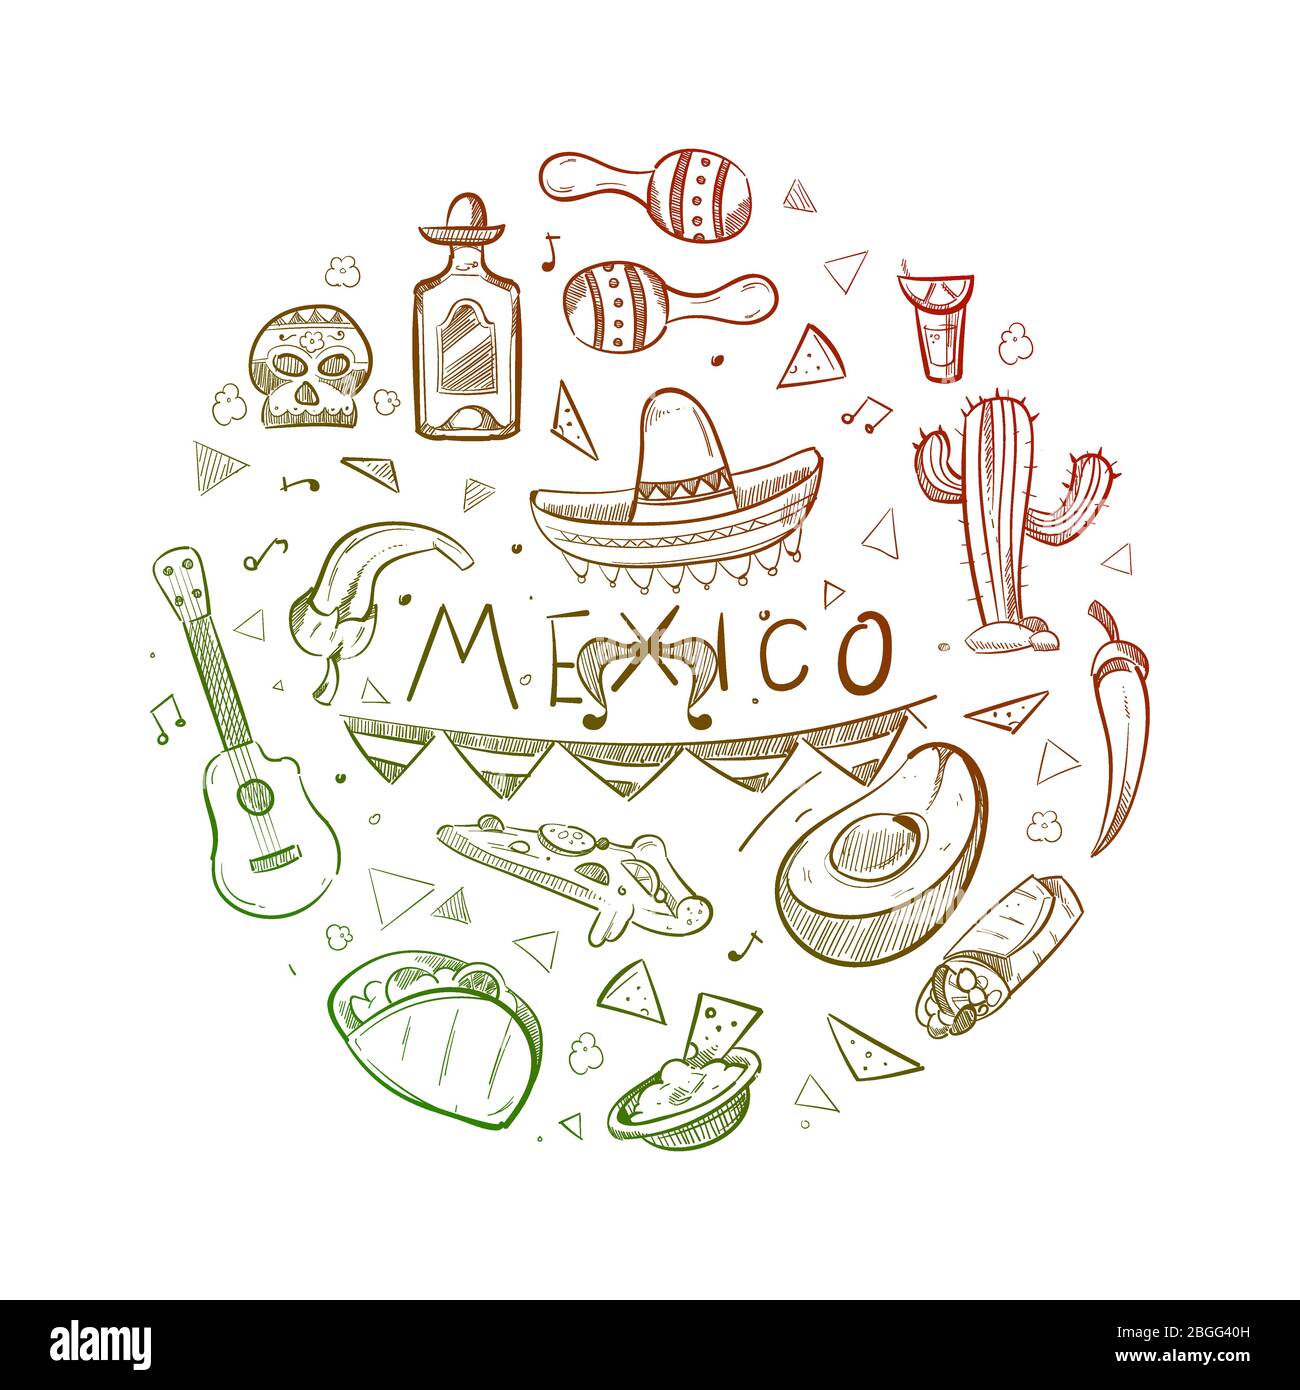 Símbolos mexicanos dibujados a mano - dibujo logotipo o emblema de méxico, ilustración vectorial Ilustración del Vector